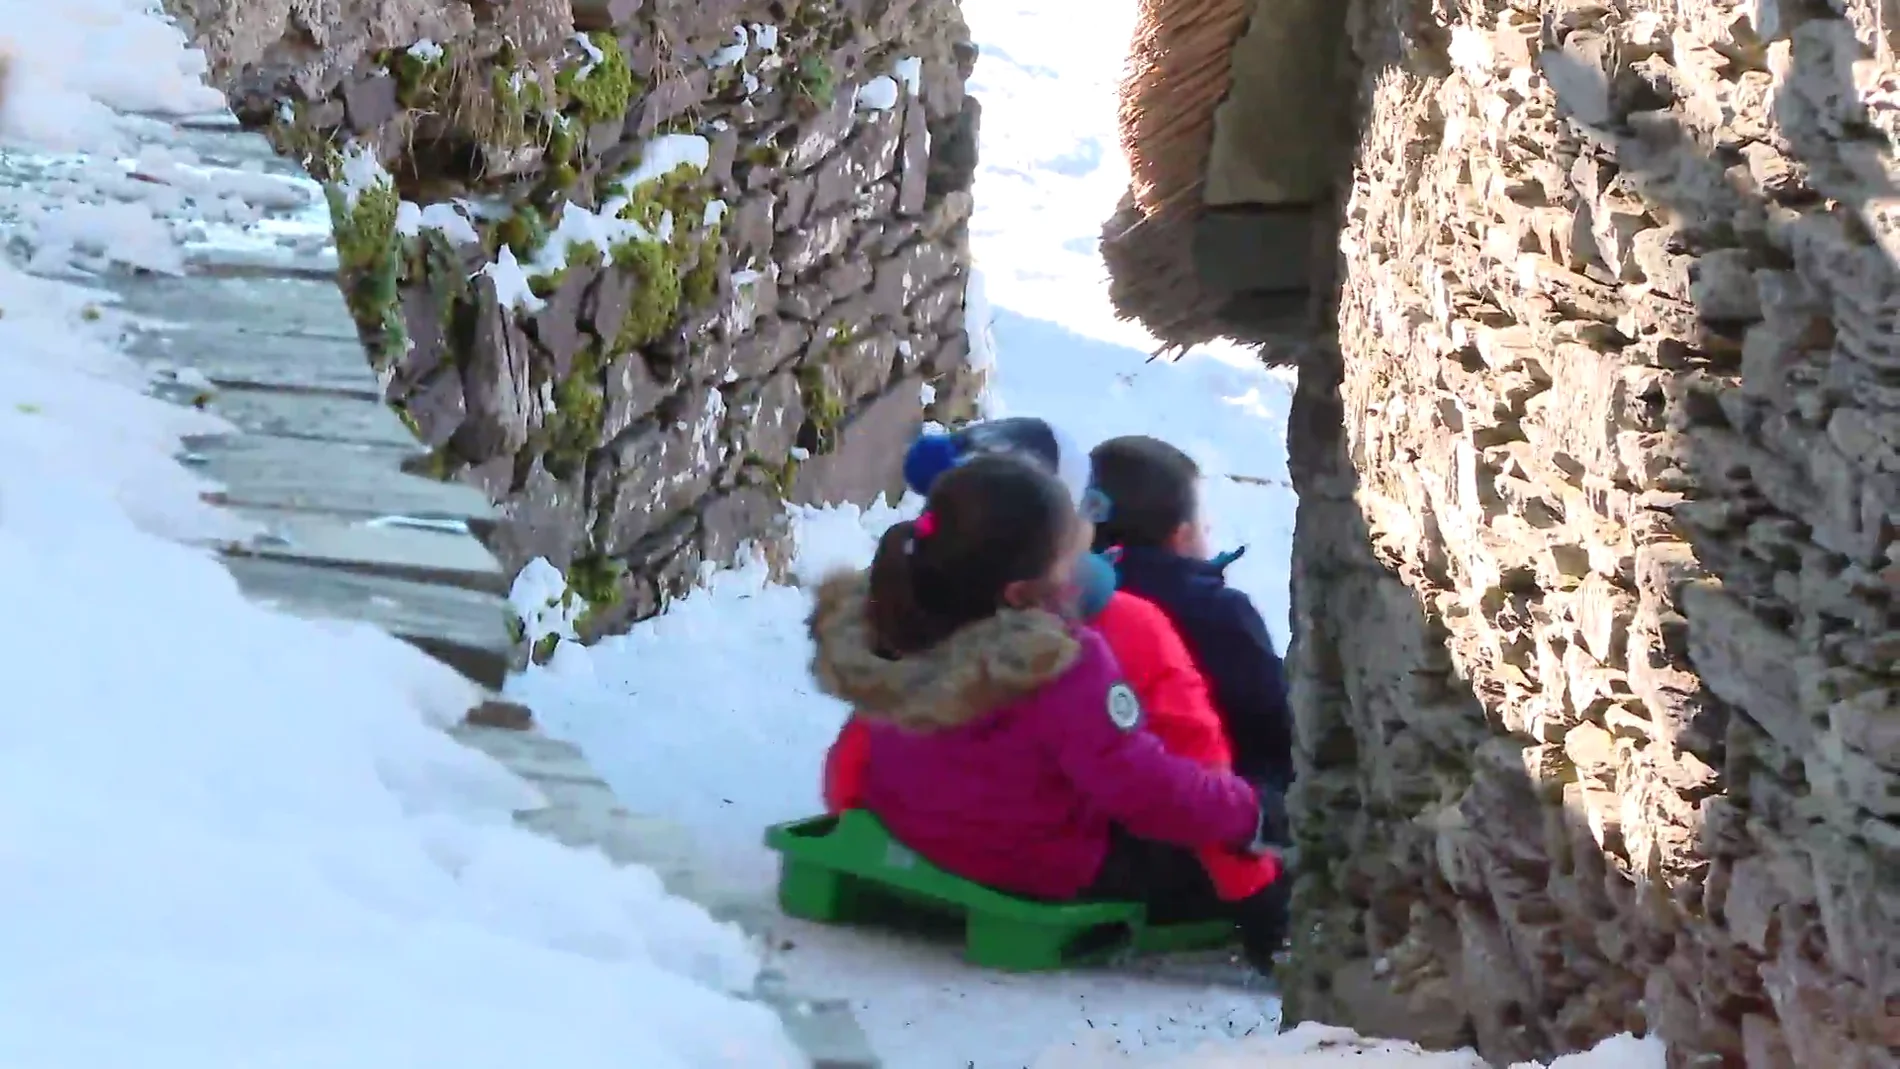 Las primeras nieves en O Cebreiro, Lugo, llenan las calles de turistas 